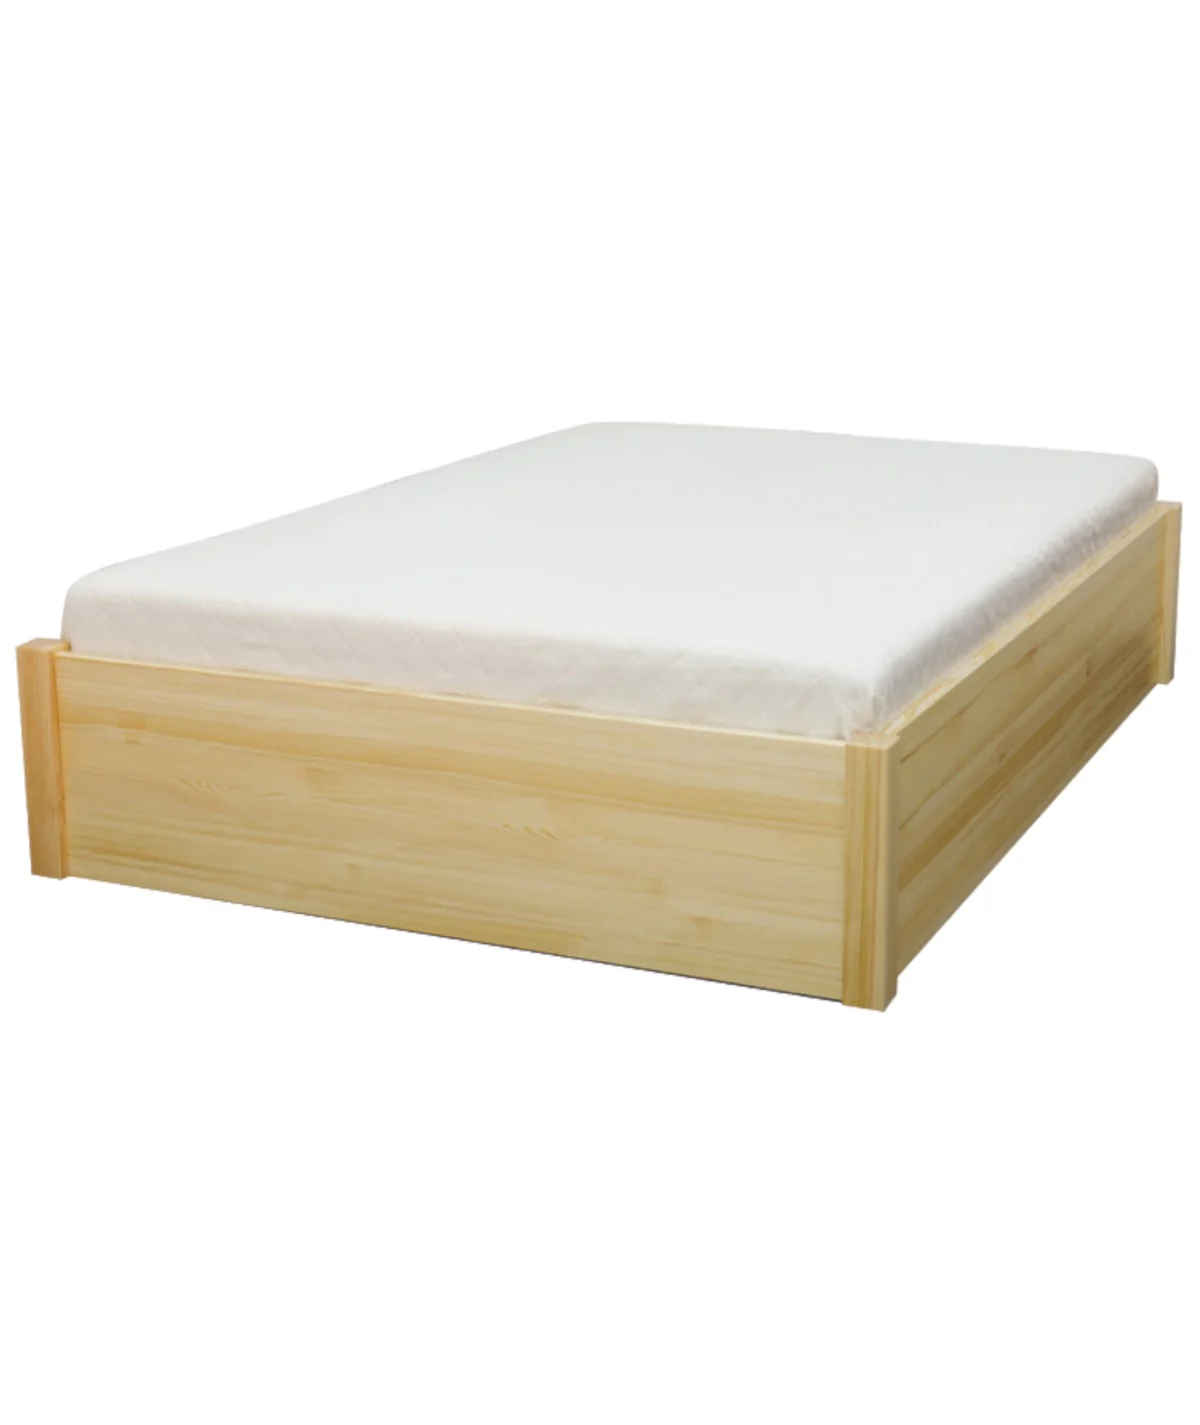 Łóżko bukowe KALCYT 3 STOLMIS podnoszone na ramie drewnianej